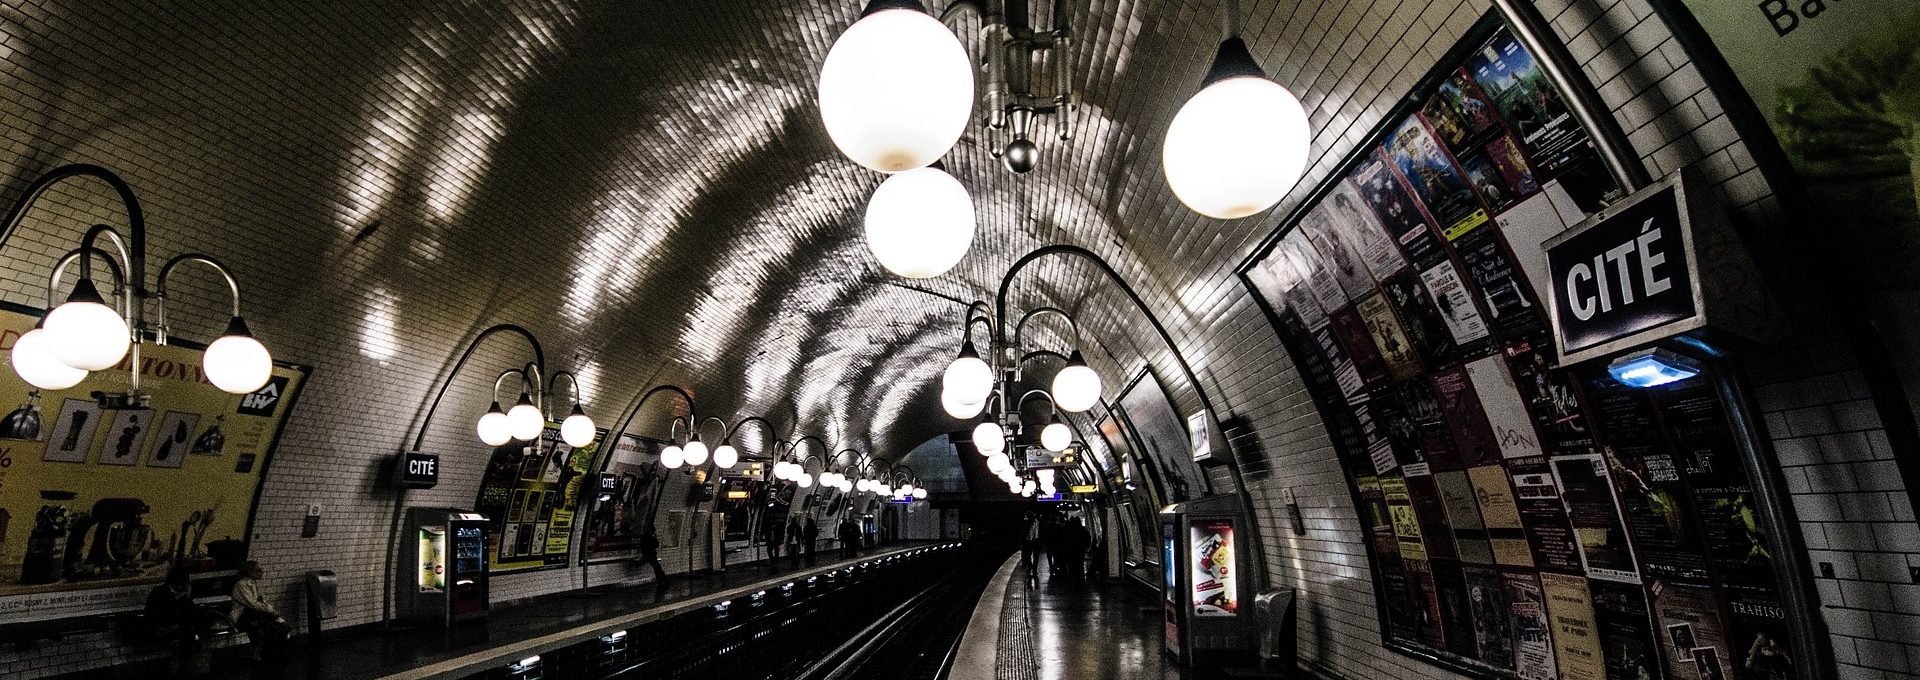 Interior de um metrô em Paris